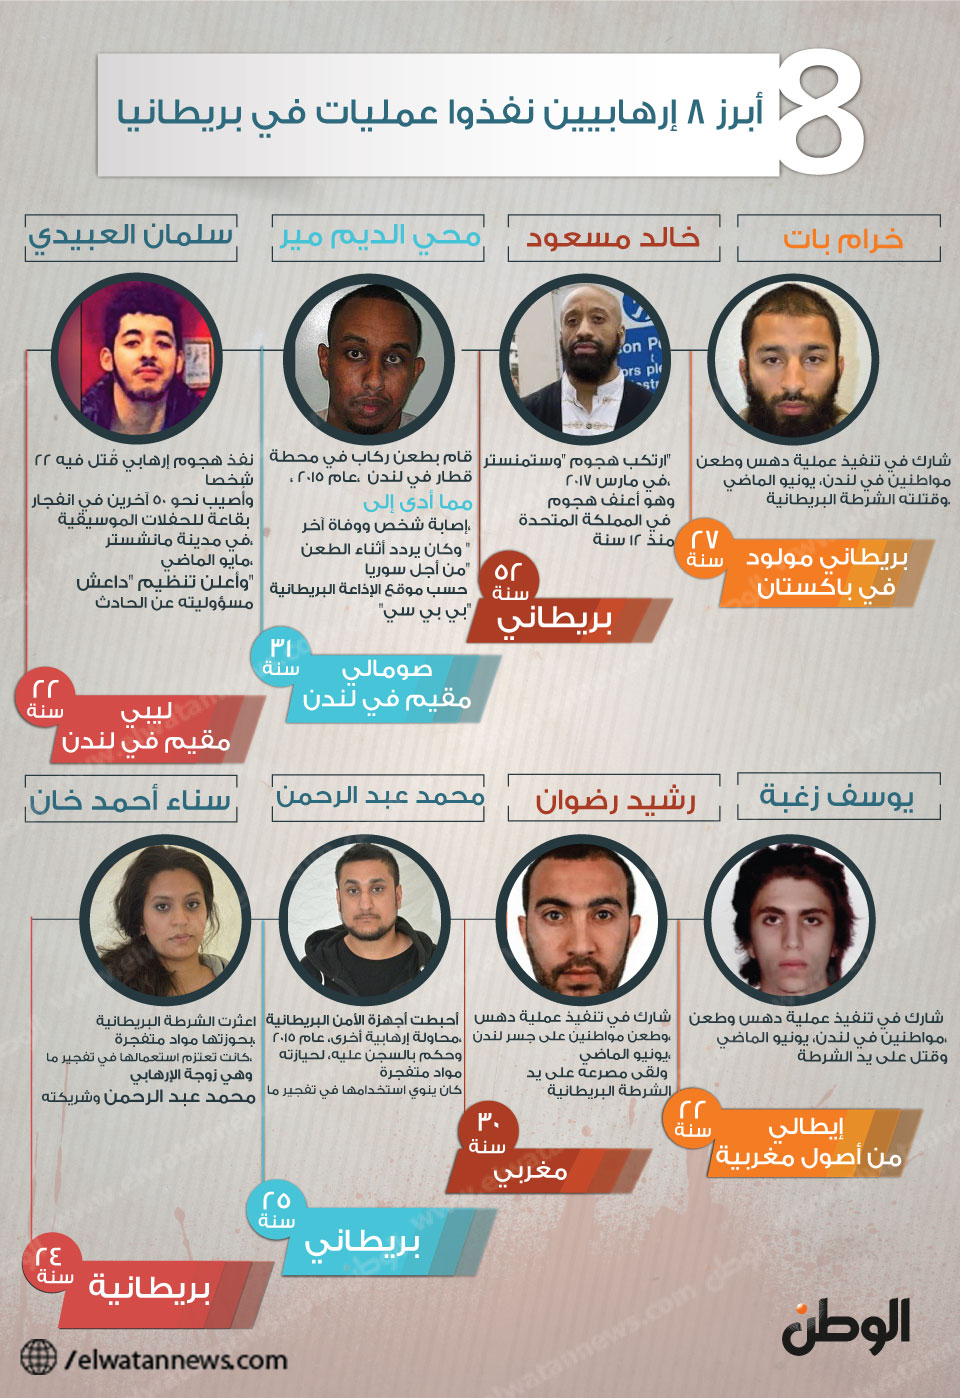 أبرز 8 إرهابيين نفذوا عمليات في بريطانيا